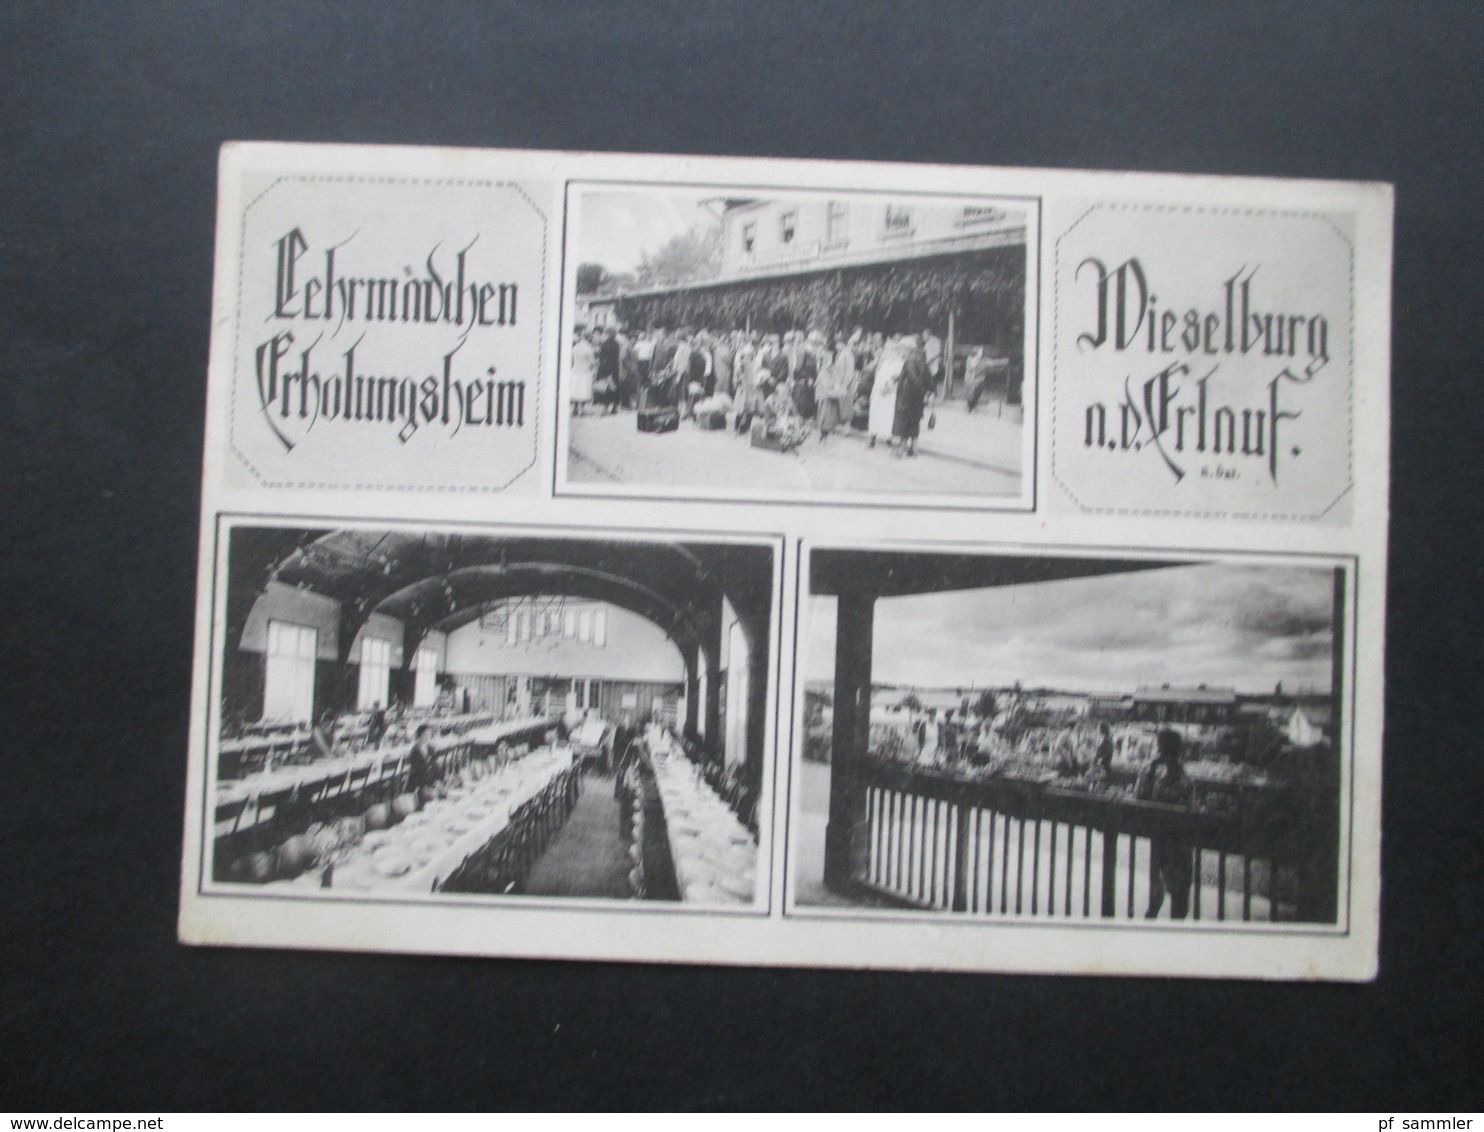 Österreich 1925 Mehrbildkarte Lehrmädchen Erholungsheim Wieselburg A.d. Erlauf Phot. J. Perscheid, Wien III - Hotels & Gaststätten